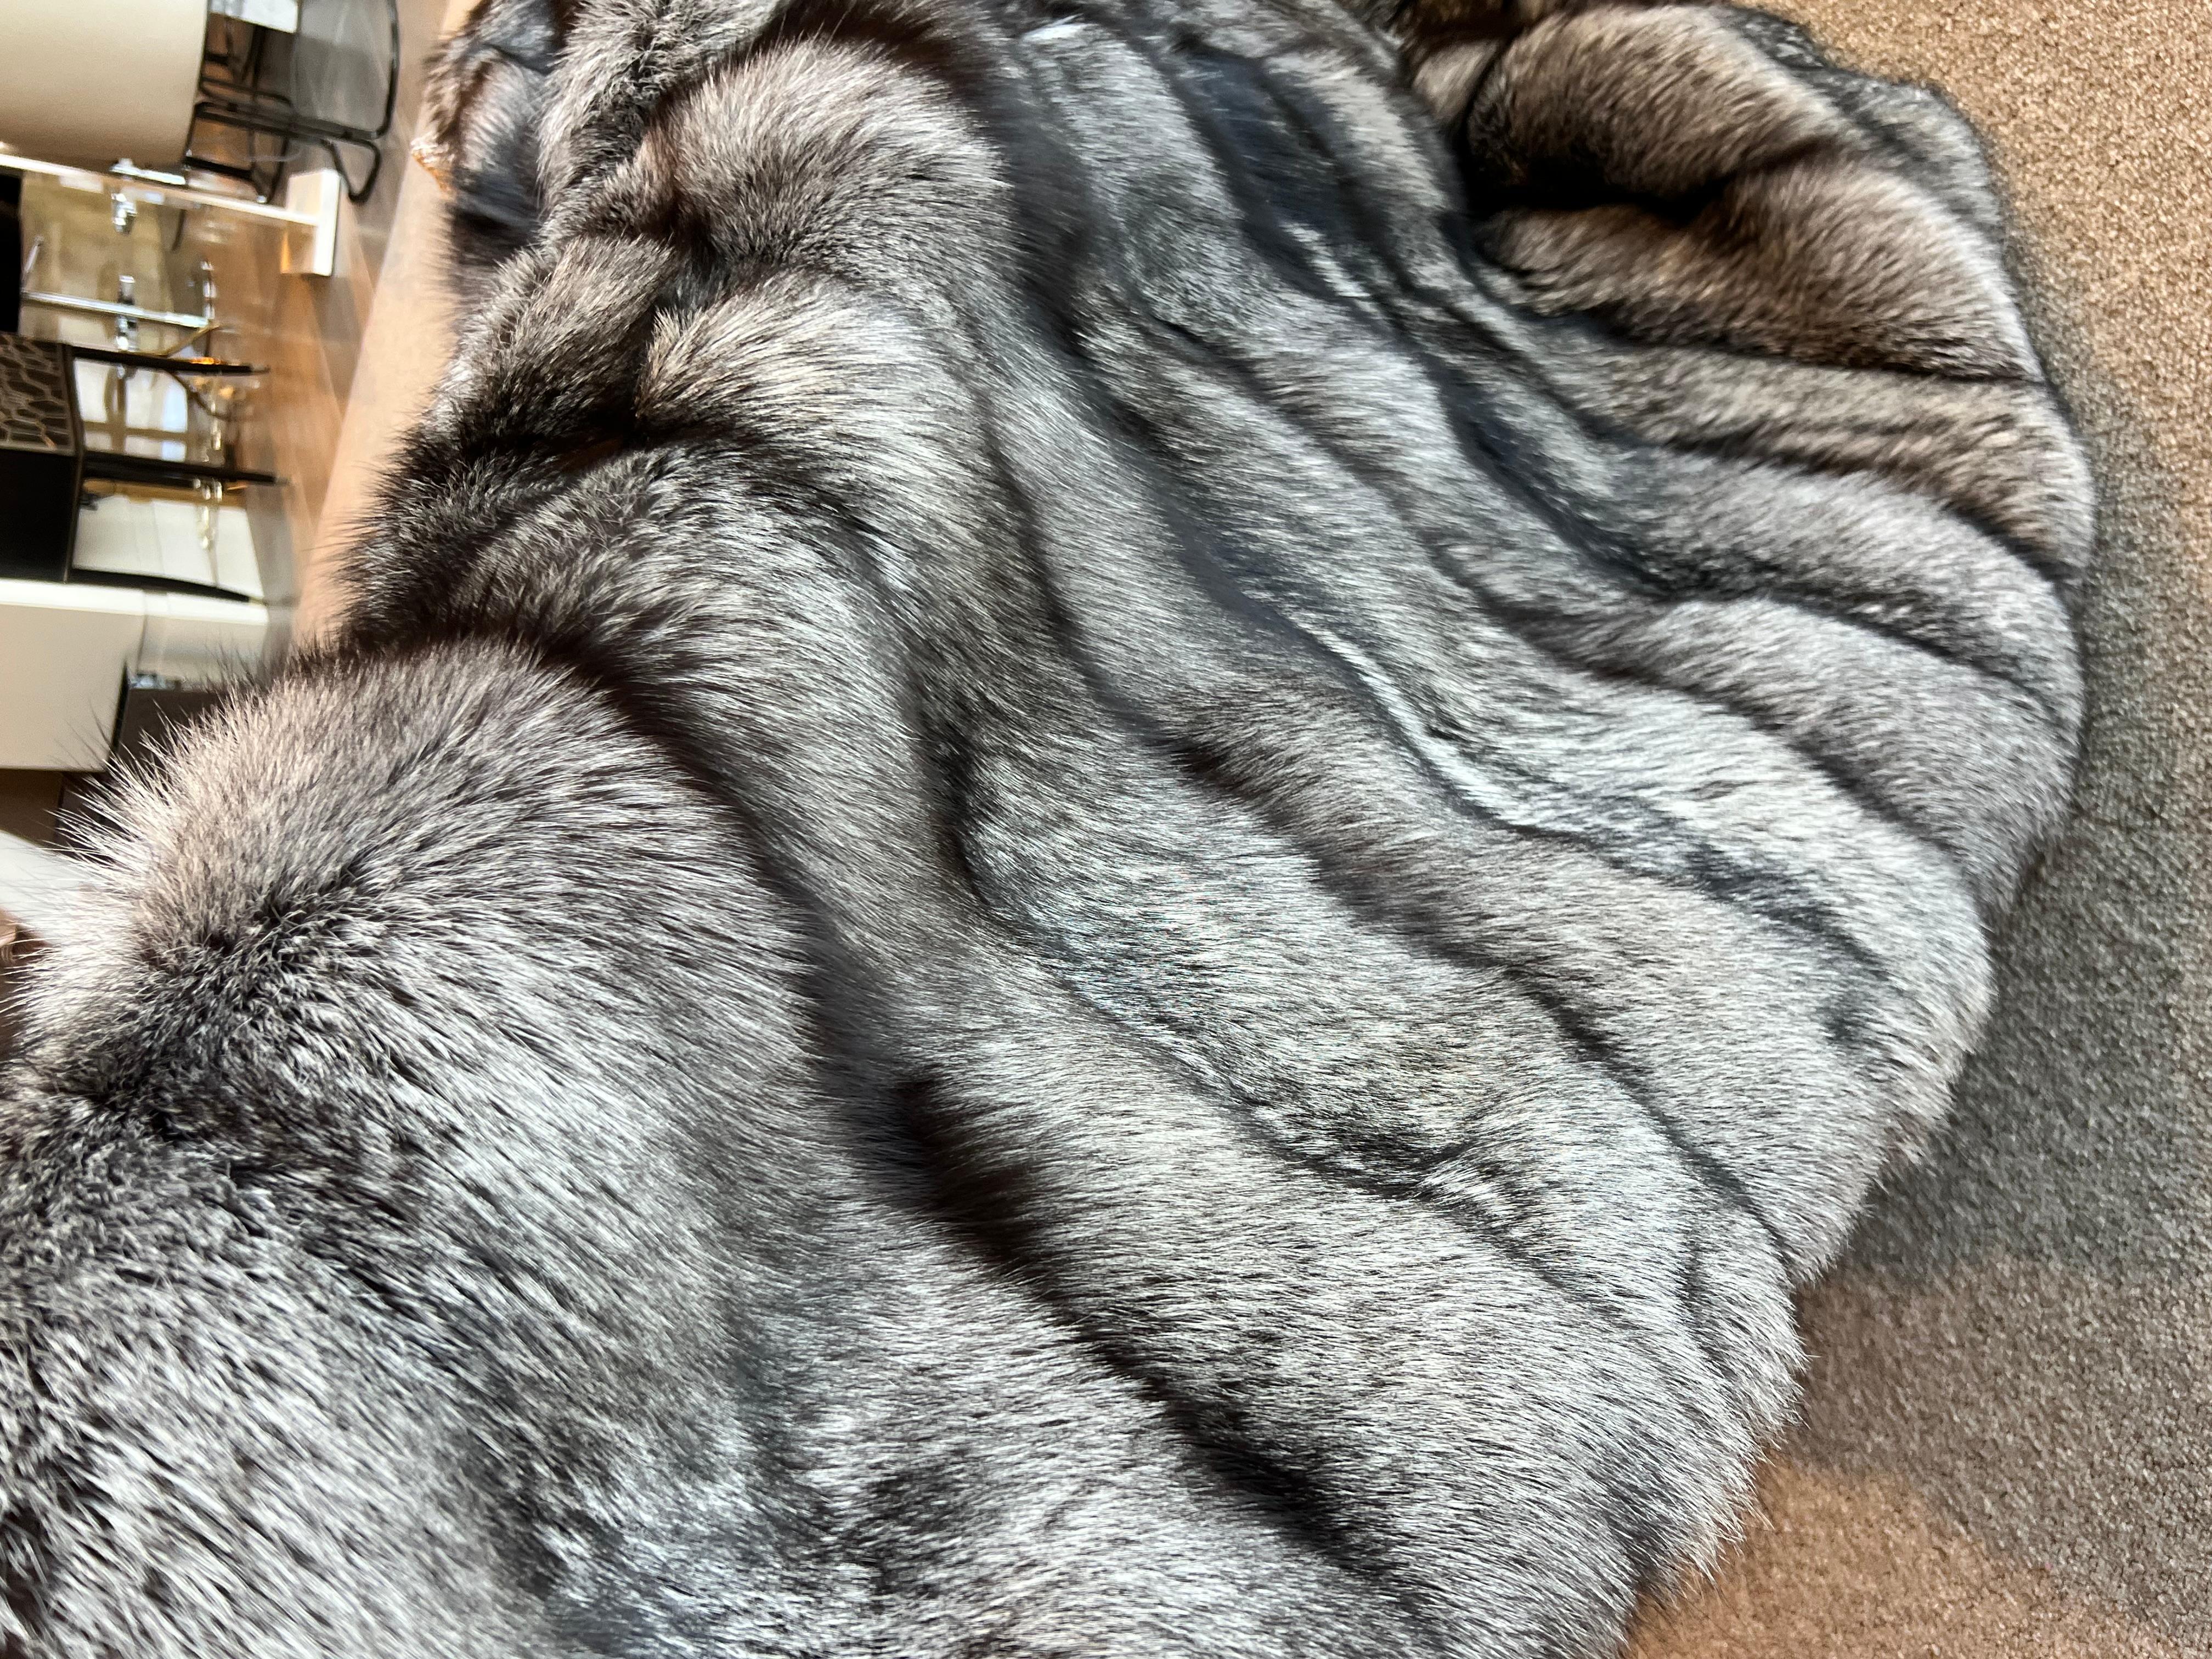 Ce grand jeté doublé de soie de renard argenté est fabriqué à partir des peaux naturelles de renard canadien les plus denses et les plus fines.
La doublure en soie confère à cette pièce un aspect doux et lisse qui se fond dans votre corps.
Cette